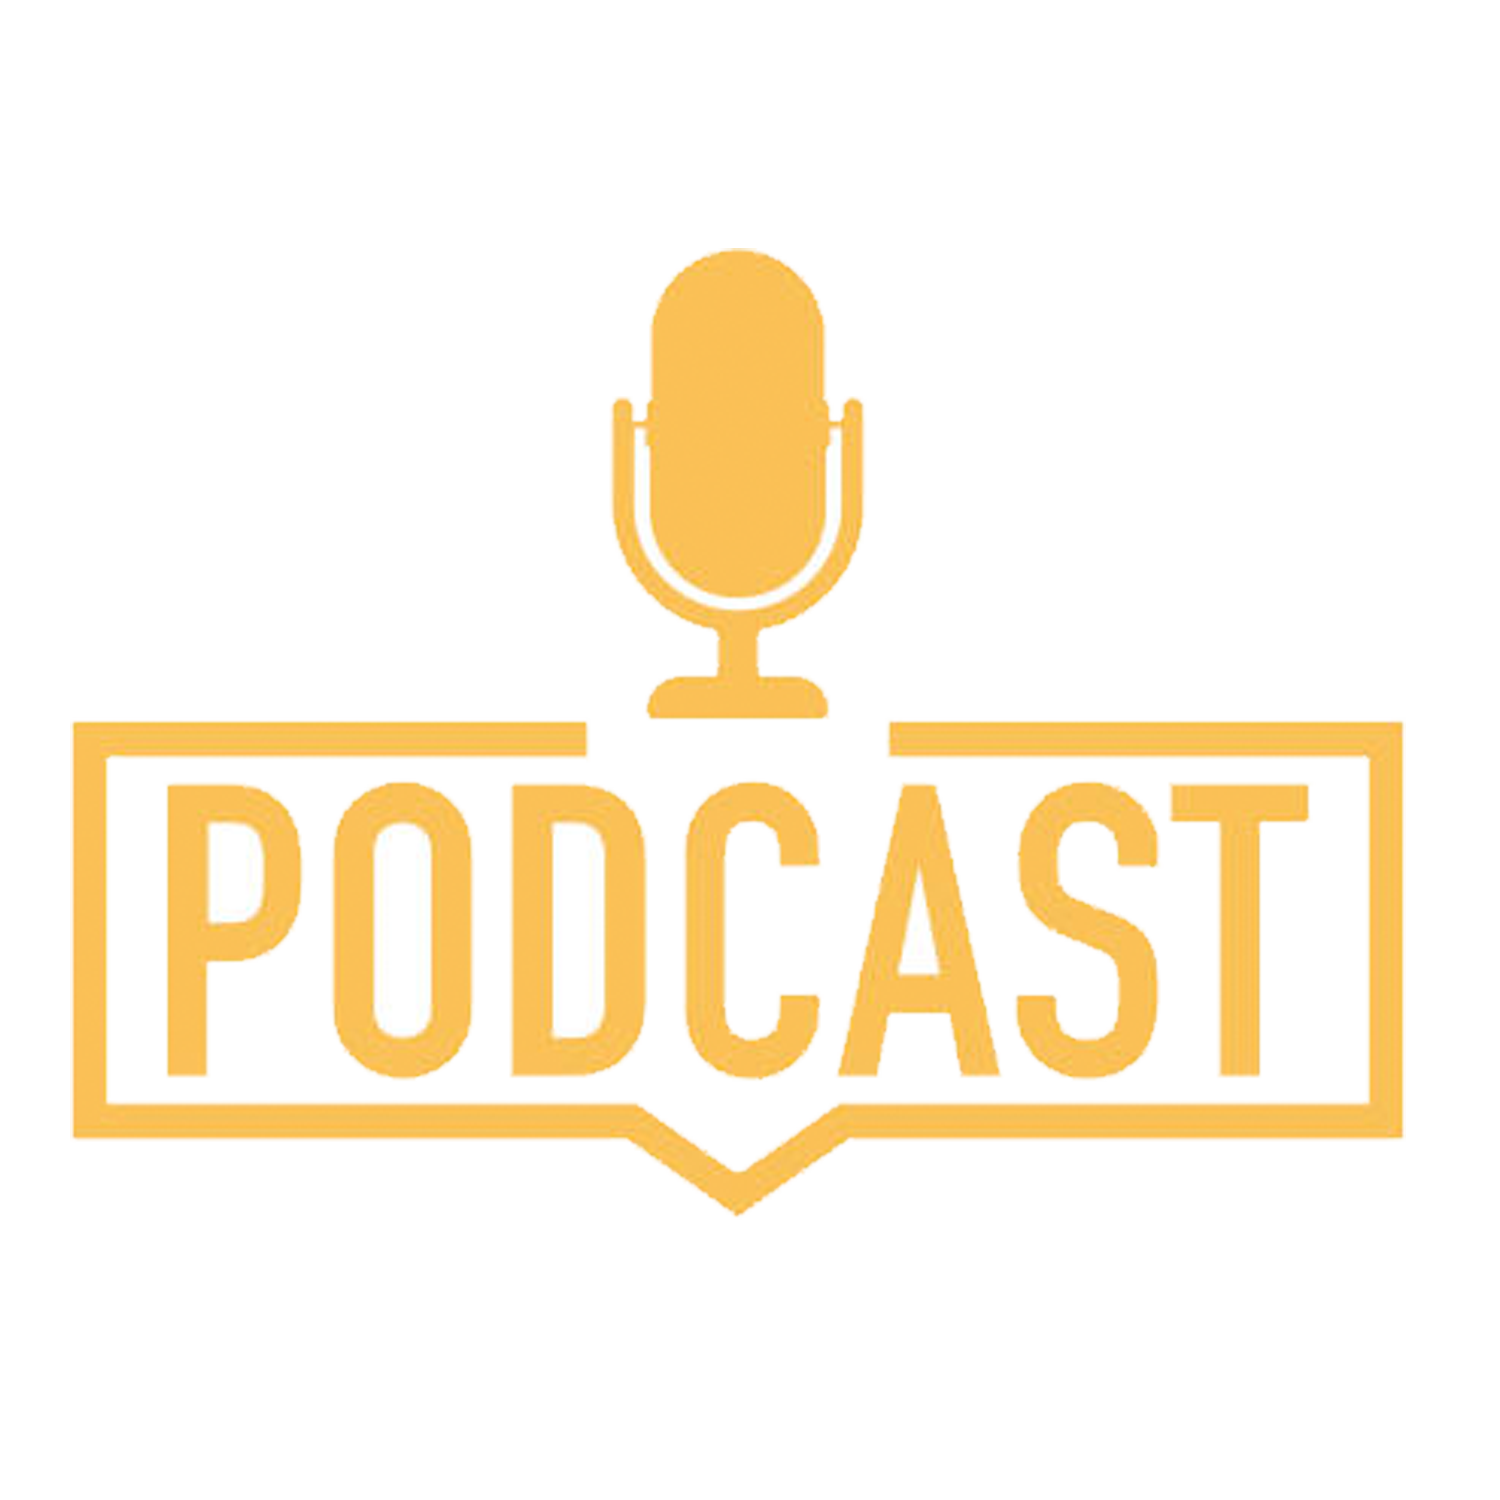 Jim Cornette Podcasts